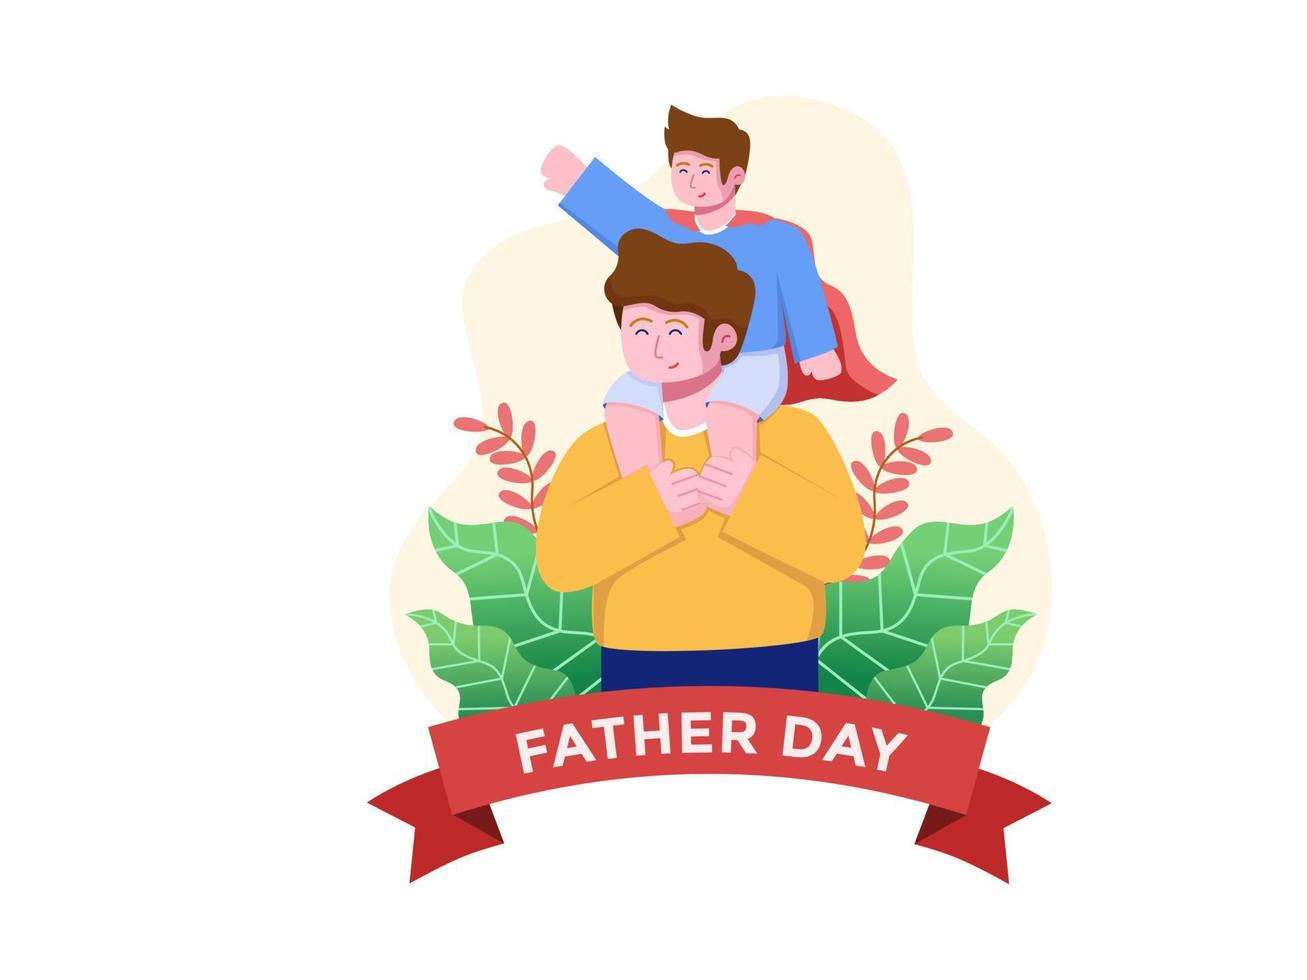 felice giorno del padre illustrazione vettoriale con un padre che porta suo figlio e suo figlio che indossa un mantello da supereroe. può essere utilizzato per il web, cartoline, biglietti di auguri, stampa, banner, ecc.